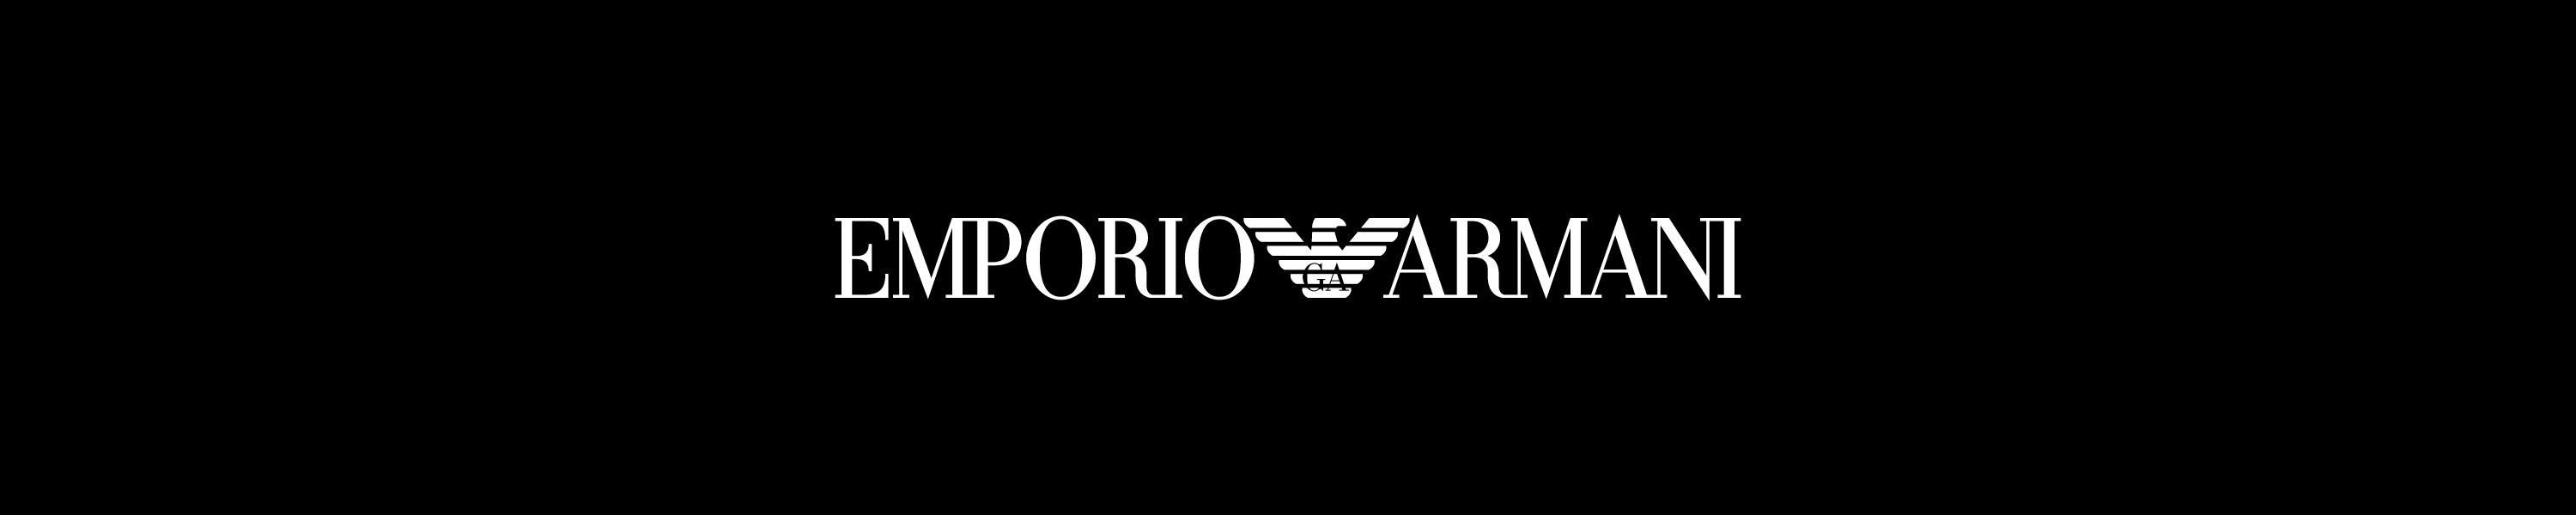 Ты любишь армани. Эмпорио Армани лейбл. Эмпорио Армани логотип. Emporio Armani значок. Джорджио Армани логотип.